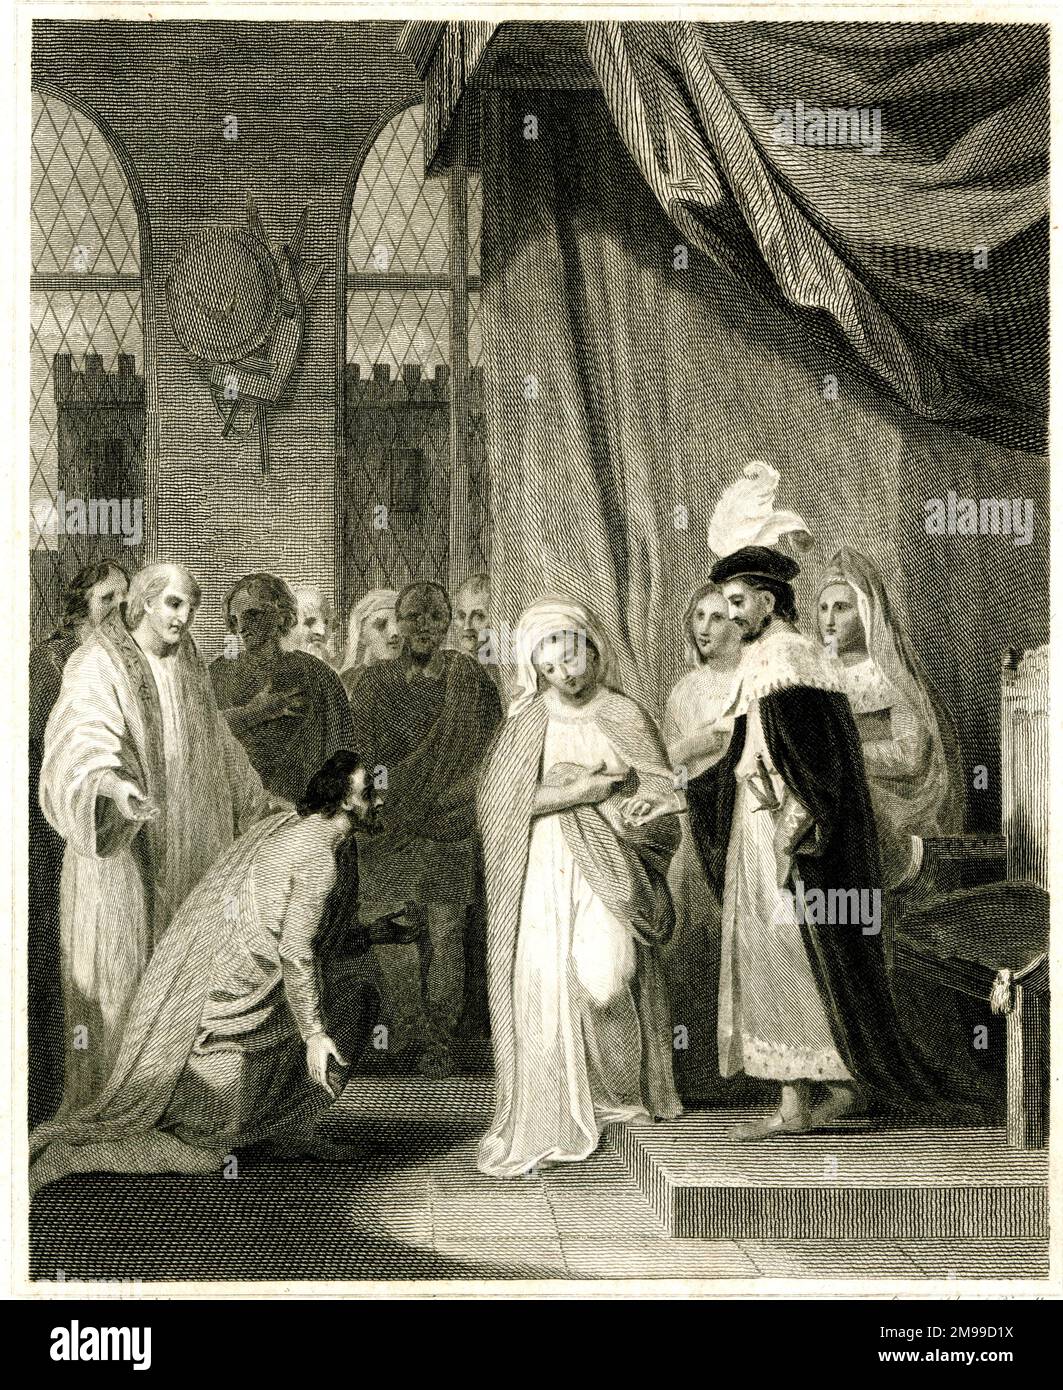 Robert der Bruce, König der Schotten, präsentiert seine Schwester Mary Bruce in der Ehe mit Sir Neil Campbell, einer seiner treuen Anhänger. Stockfoto